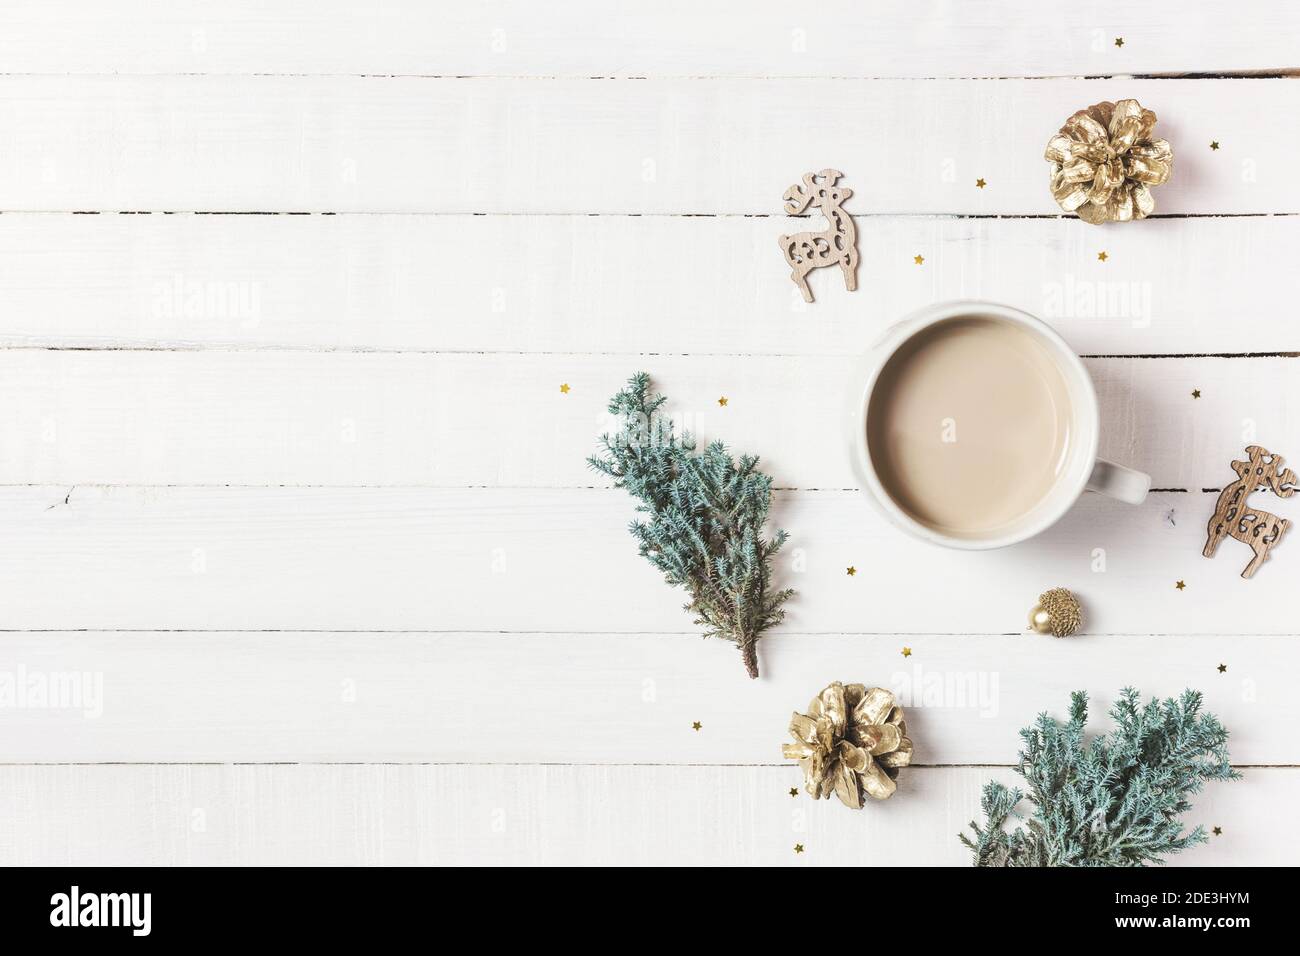 Composition de Noël. Tasse de café, arbre à feuilles persistantes et ornements sur fond de bois blanc. Hiver, concept de vacances. Plan d'affichage, vue de dessus, bac de copie Banque D'Images